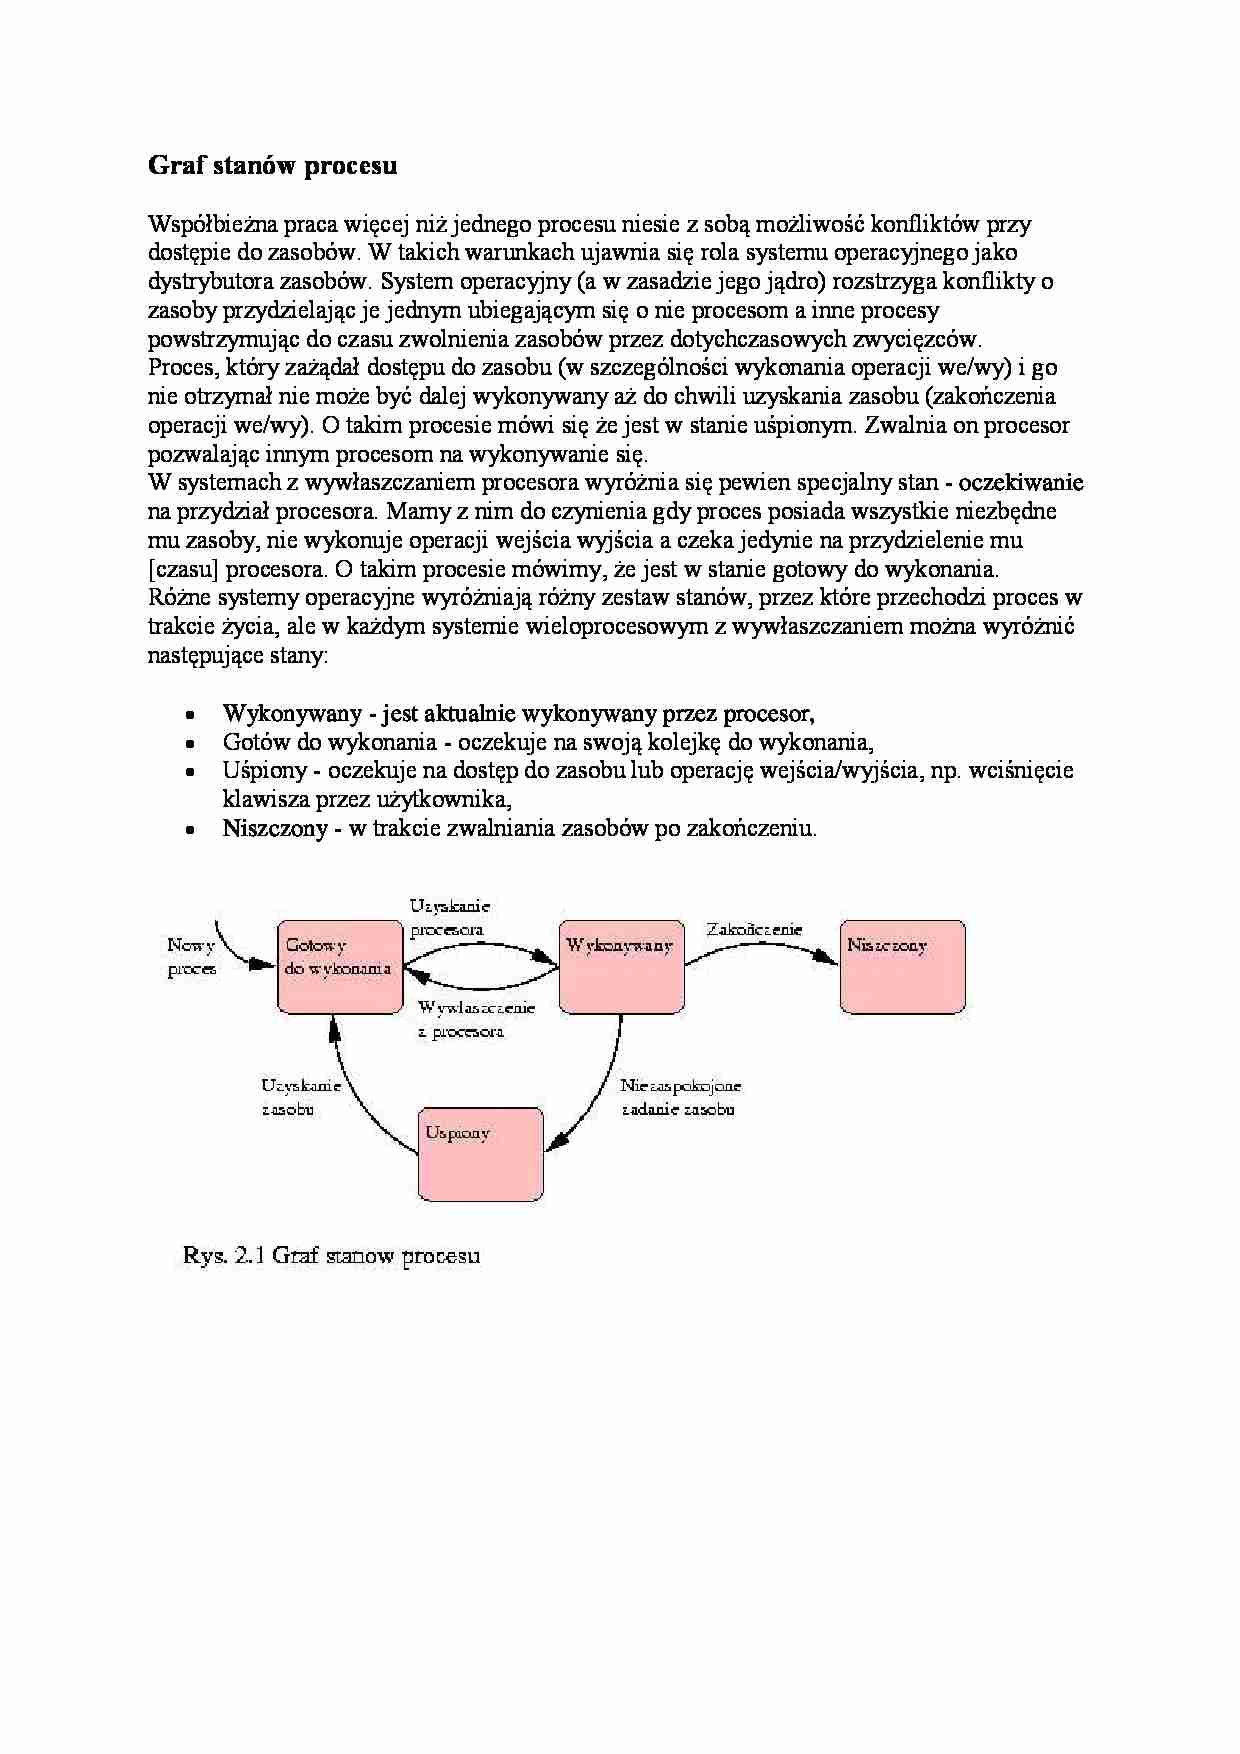 Graf stanów procesu - wykład - strona 1